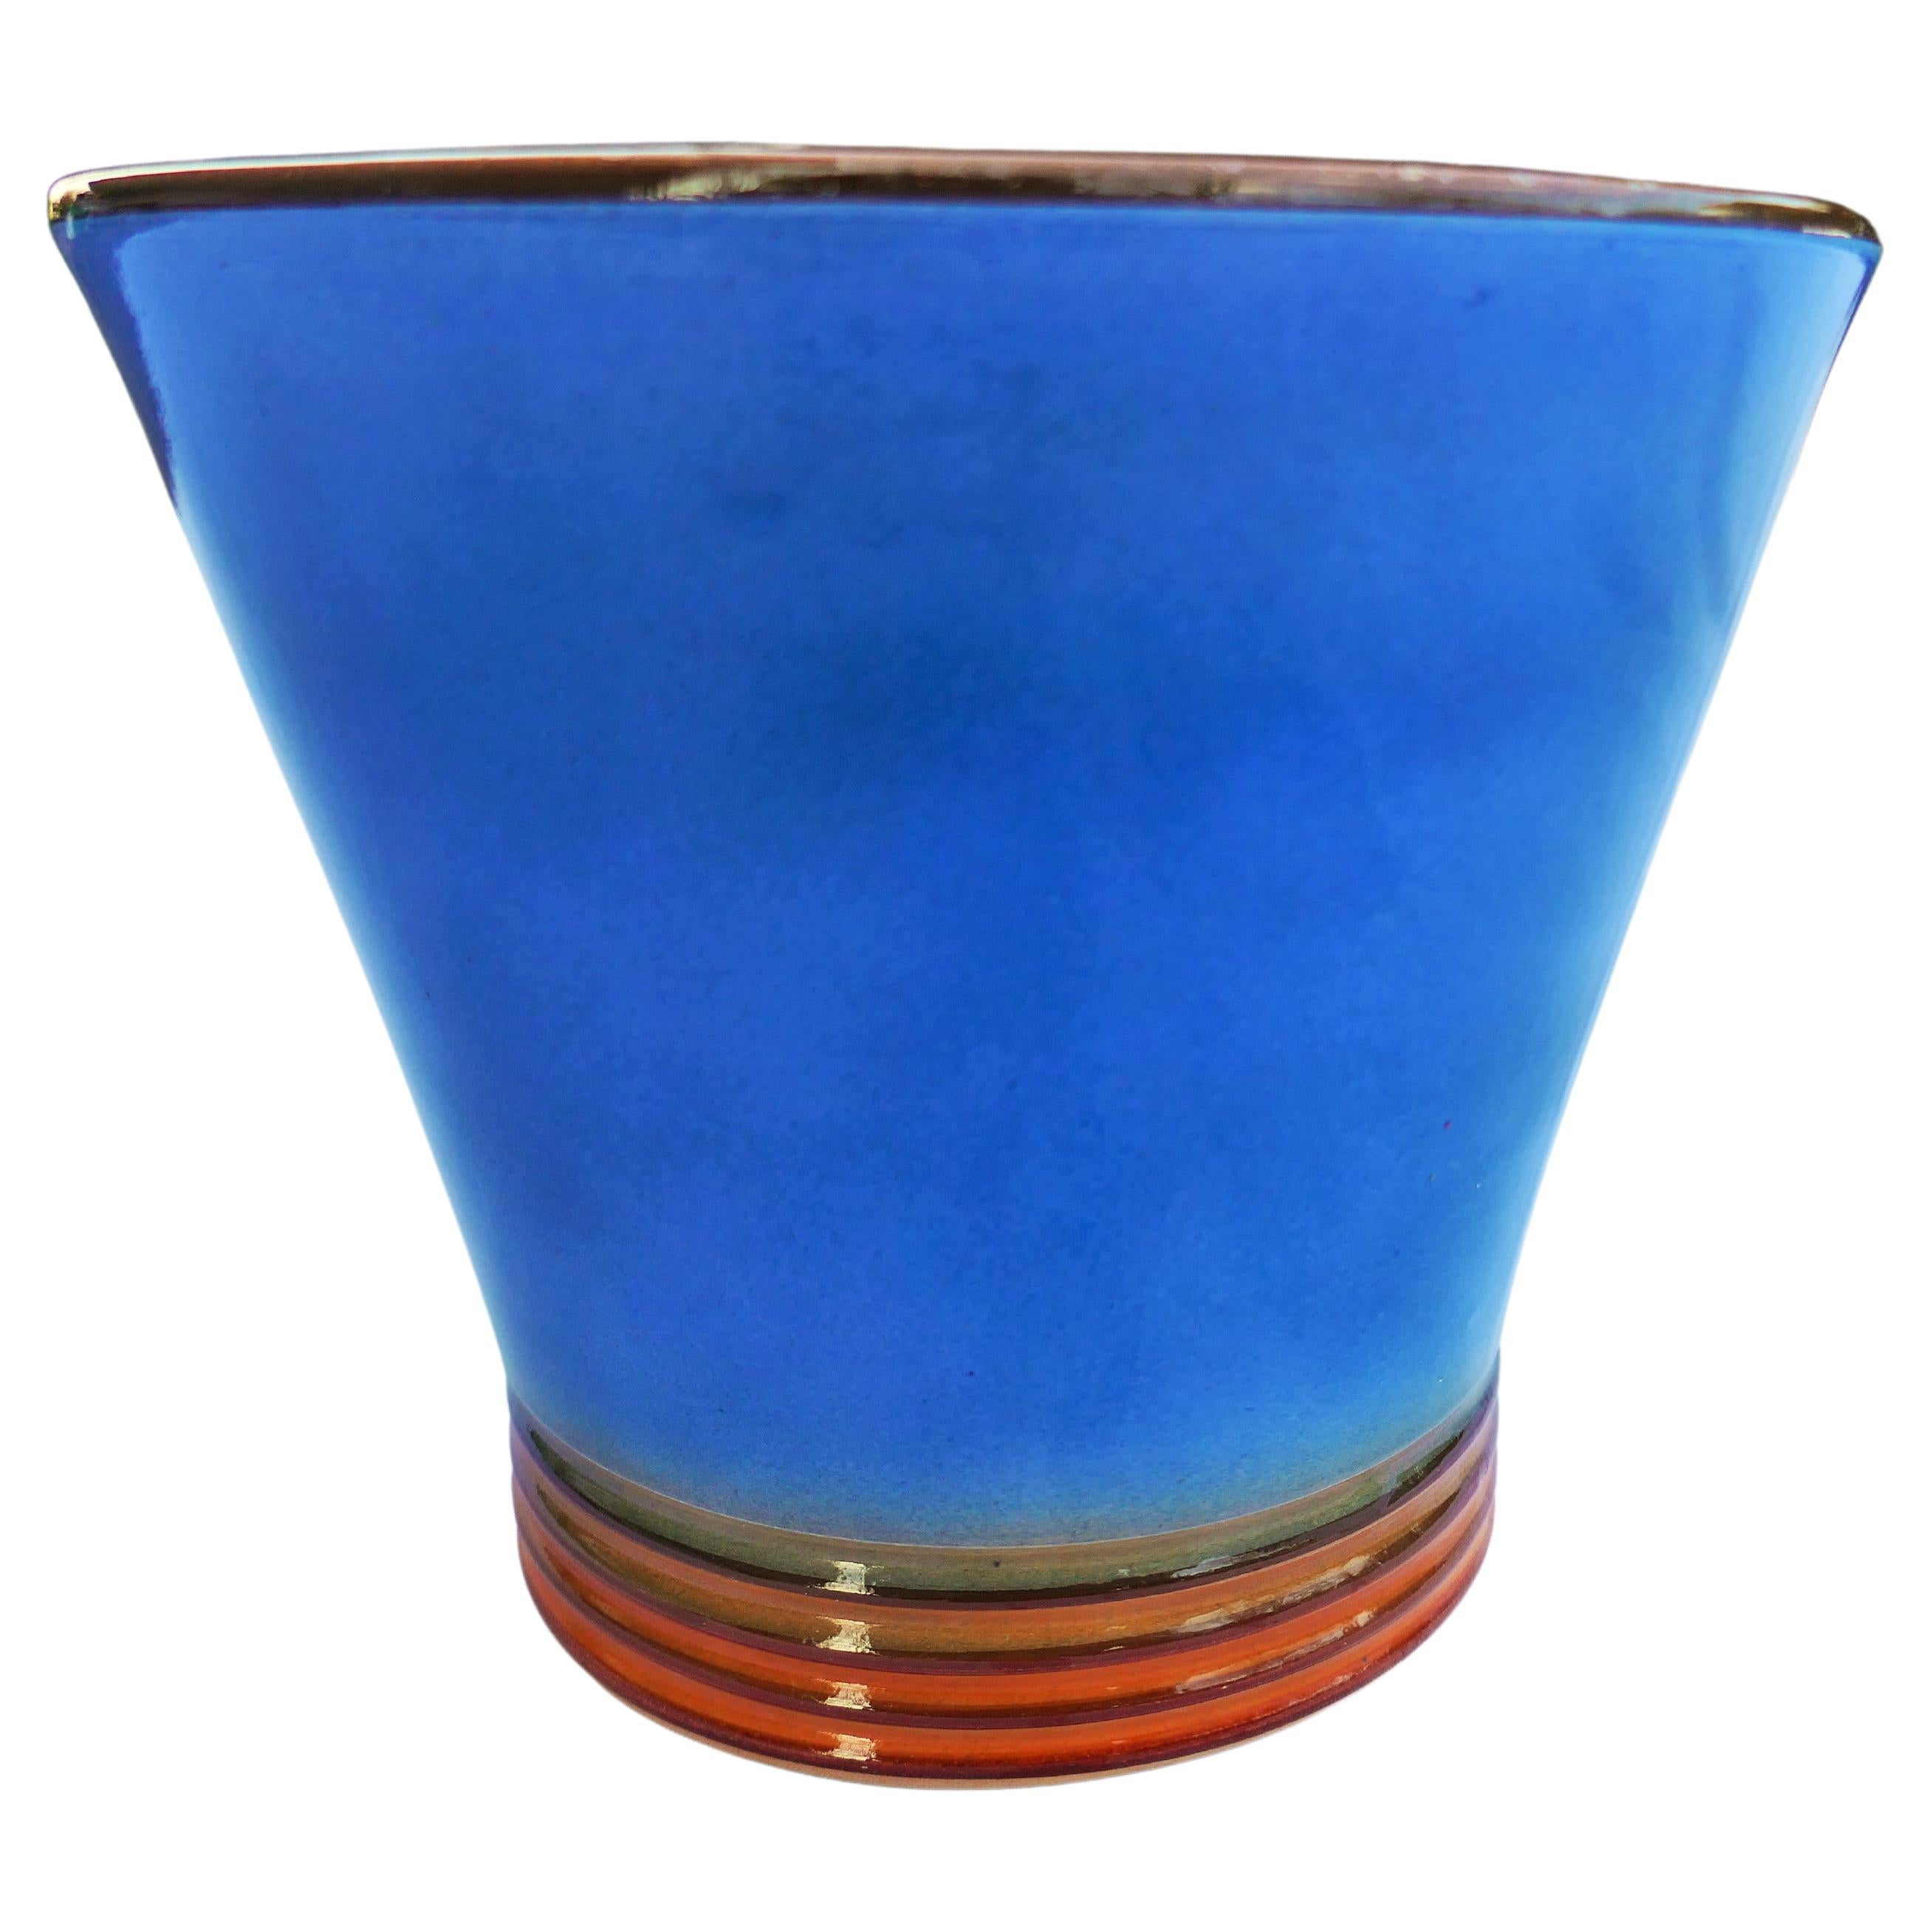 Keramische Vase möglicherweise Galvani Produktion.
Guter Zustand
Dankeschön